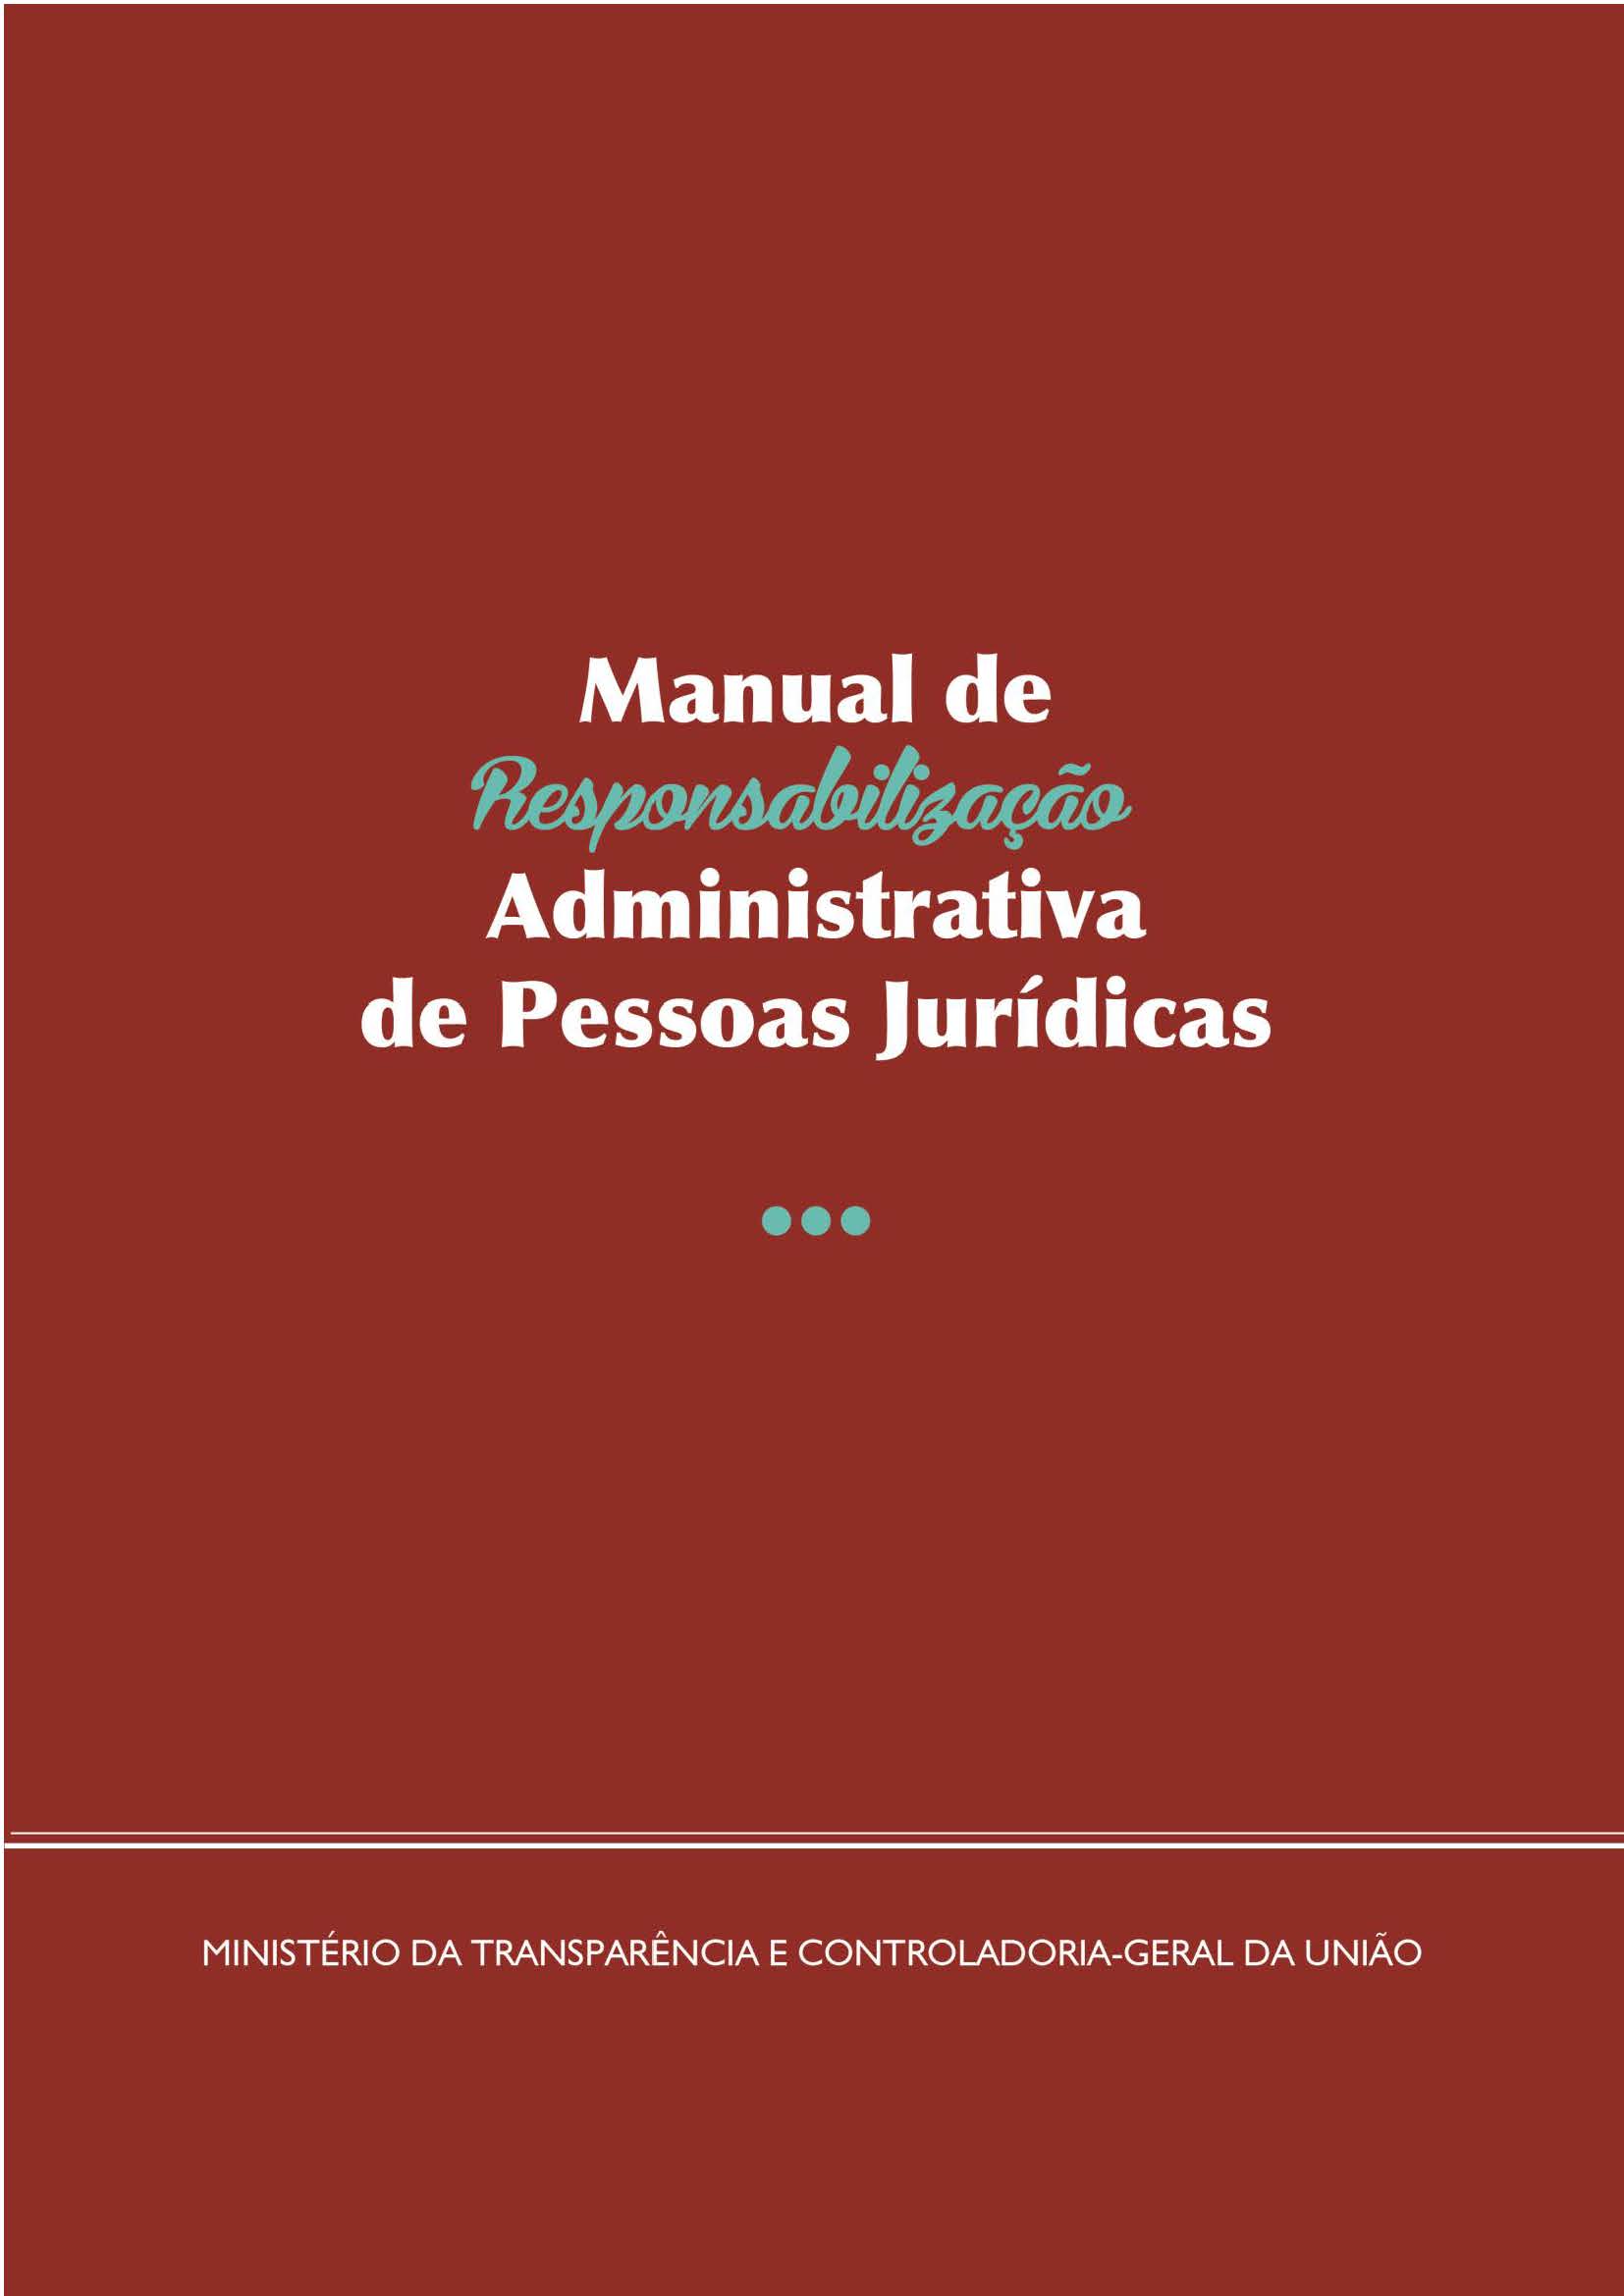 jpeg capa cgu manual responsabiliza administrativa pessoas jurdicas maio 2018